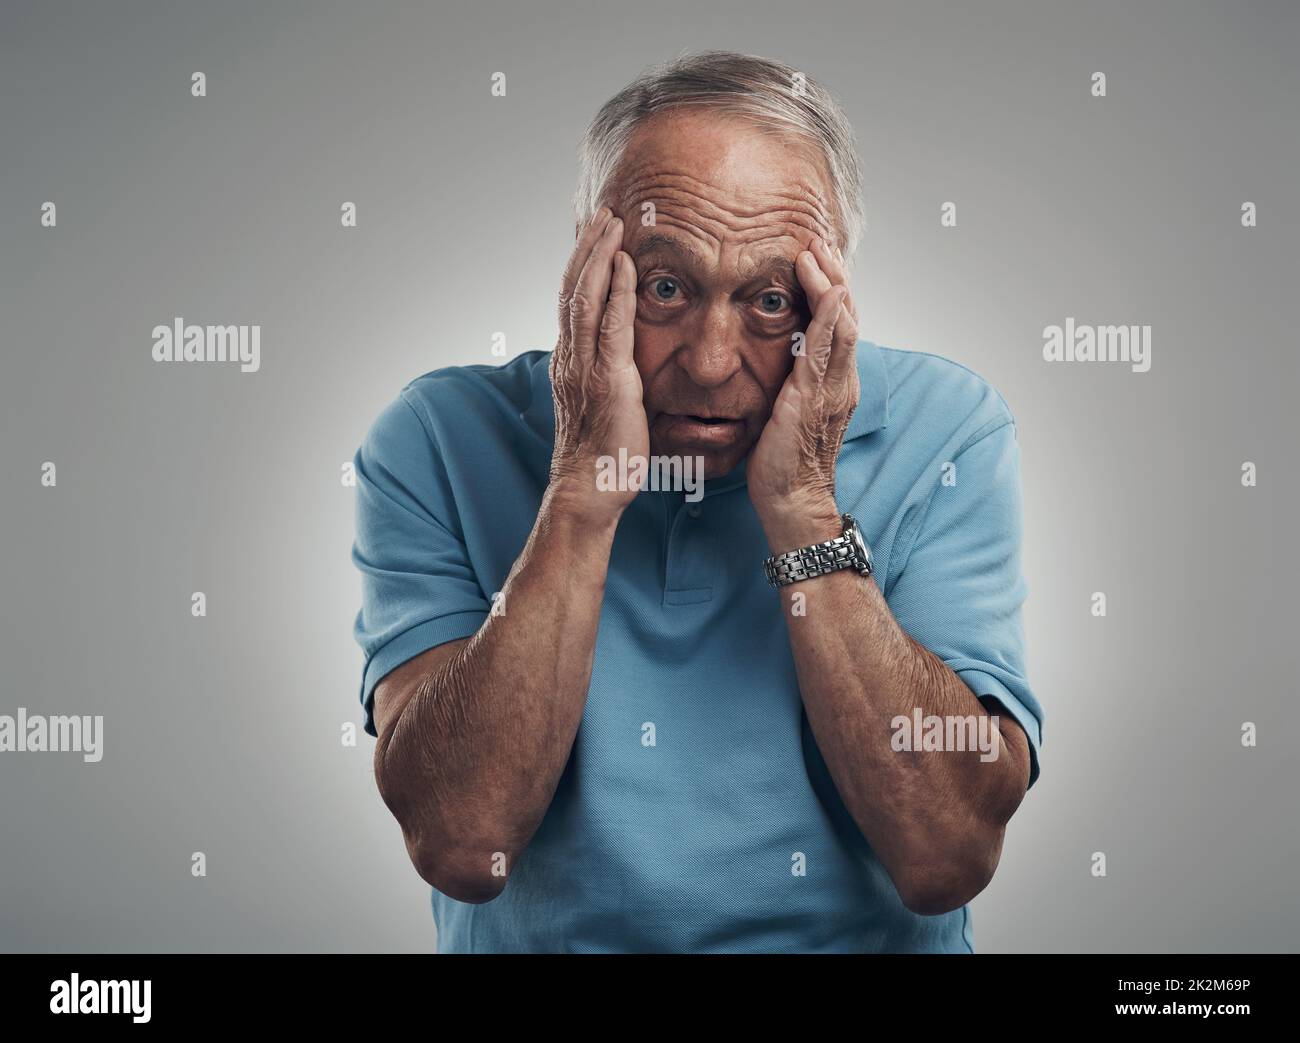 Der Stress könnte mich einfach umbringen. Aufnahme eines älteren Mannes, der in einem Studio vor grauem Hintergrund die Hände an sein Gesicht klammert. Stockfoto